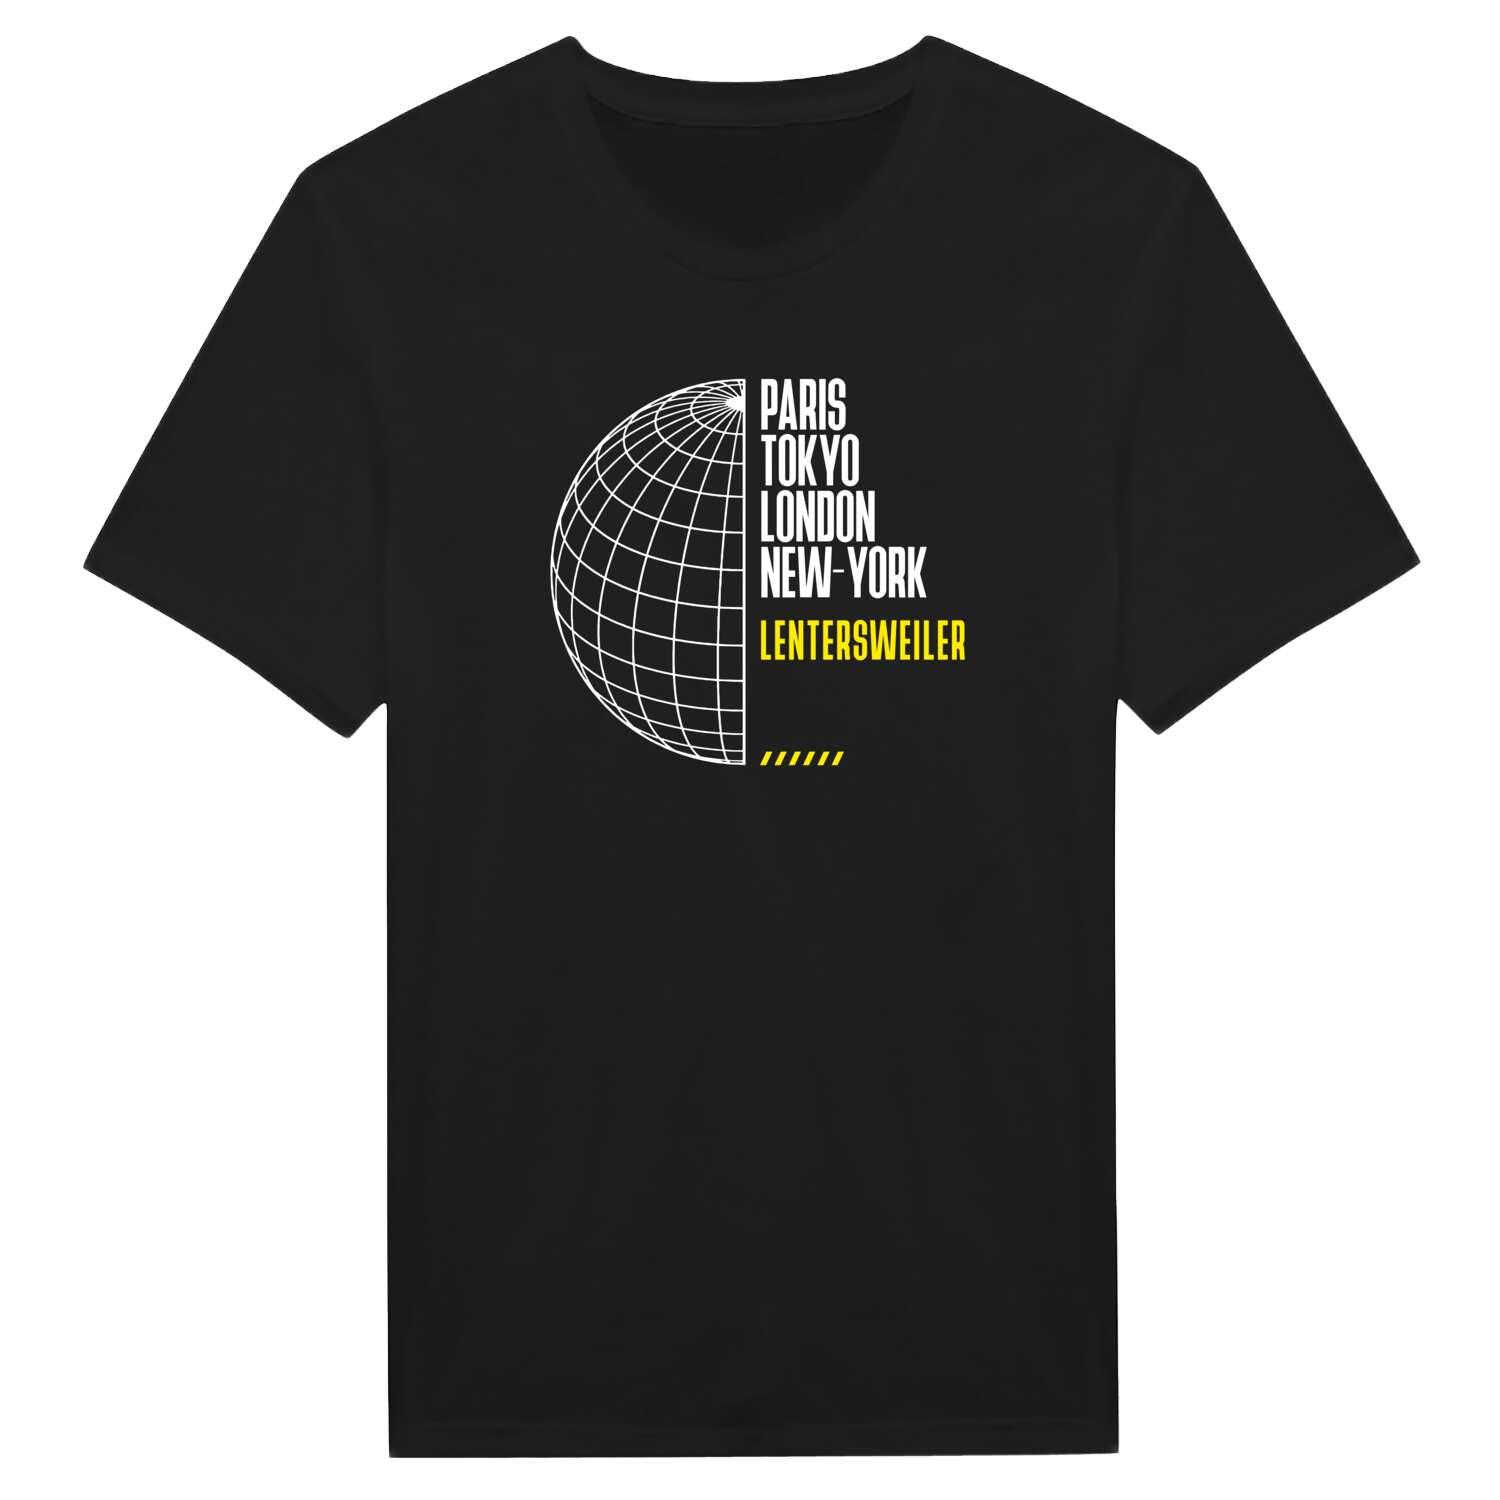 Lentersweiler T-Shirt »Paris Tokyo London«